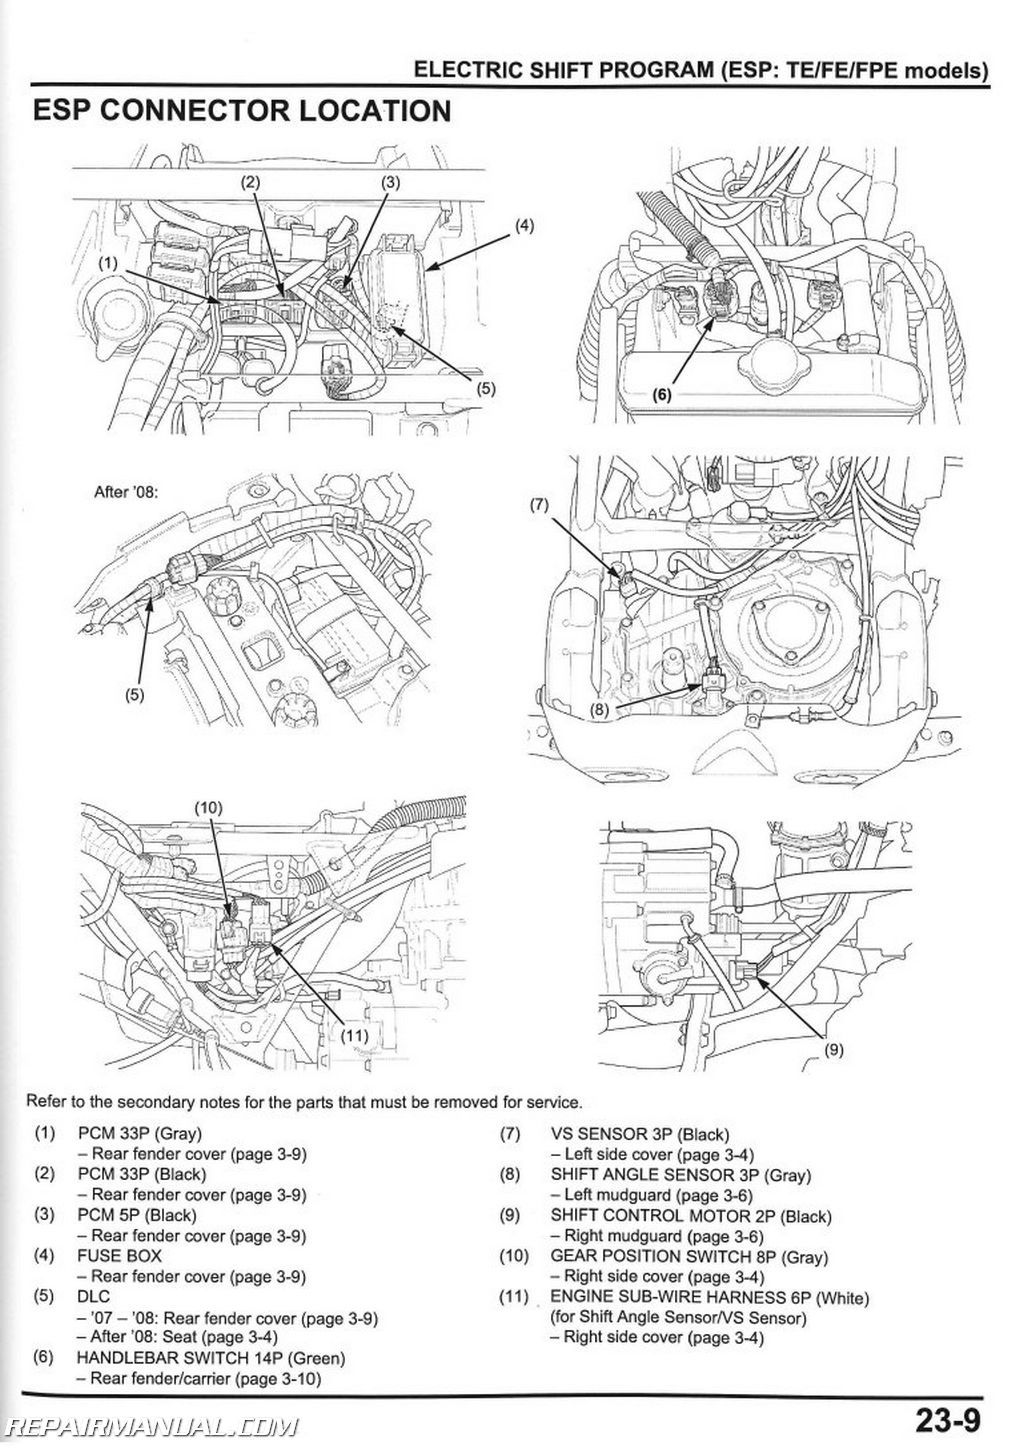 2008 Honda rancher wiring schematic